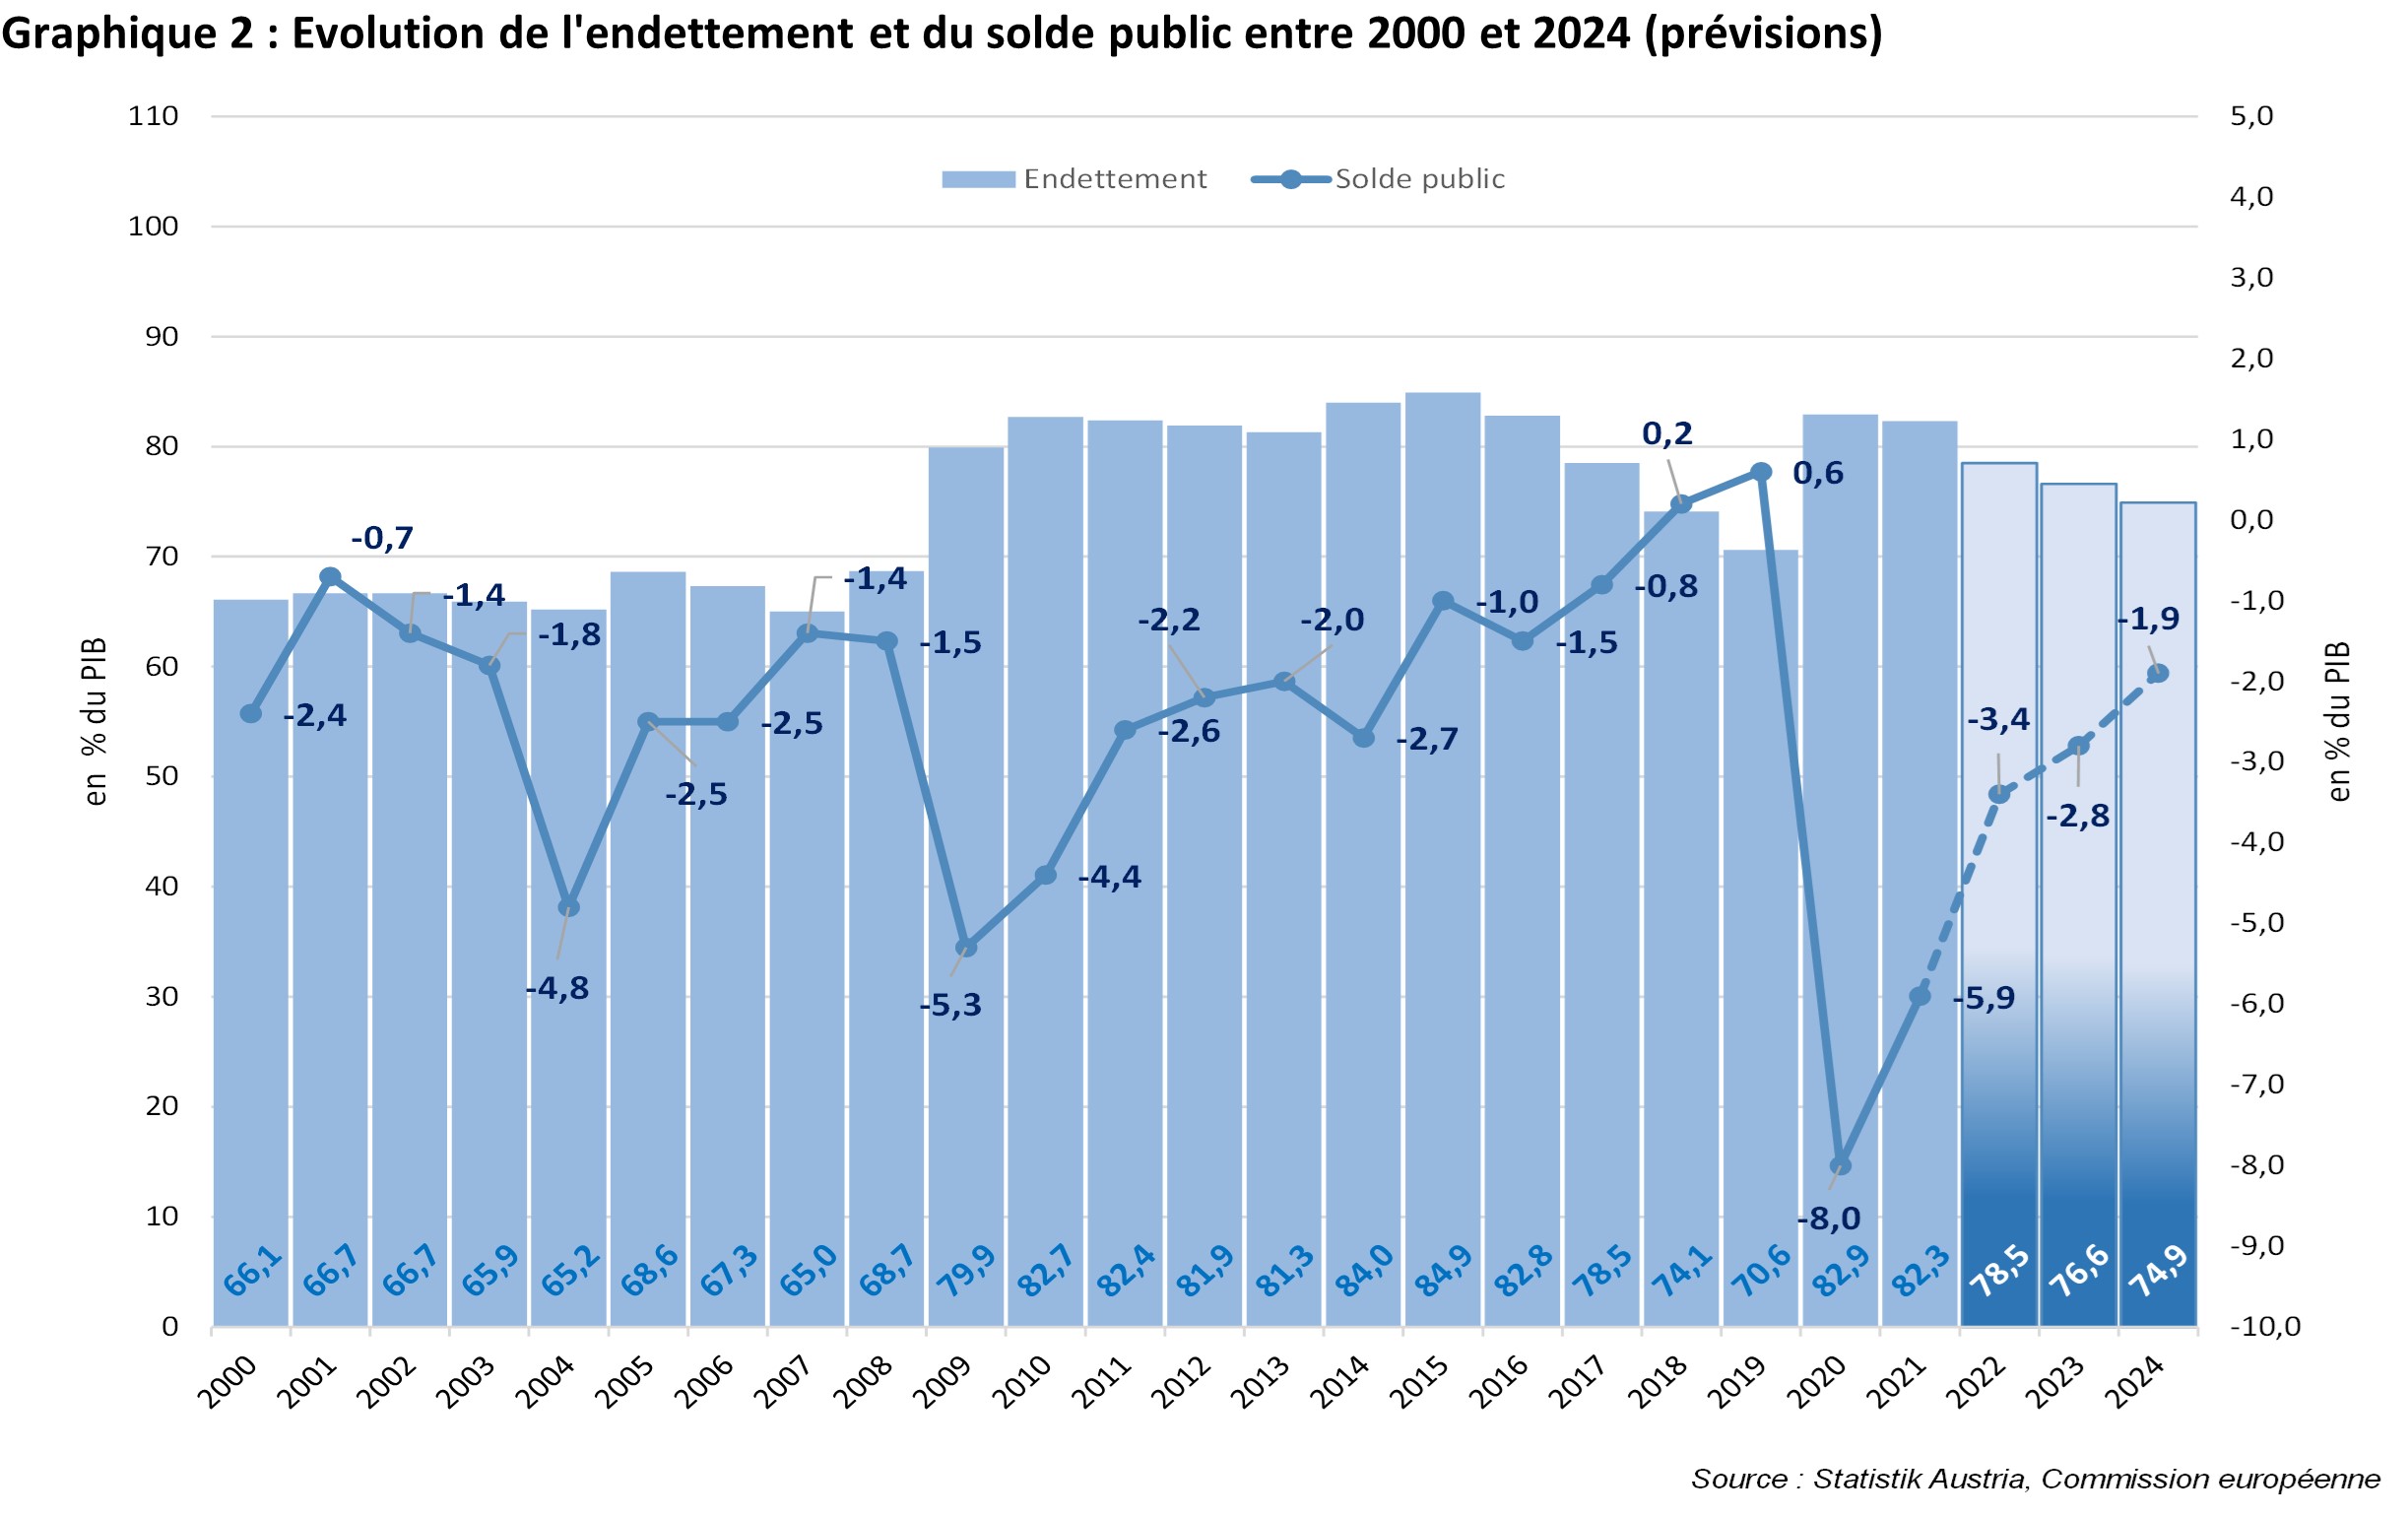 Evolution et perspectives de la dette publique et du solde public entre 2000 et 2024